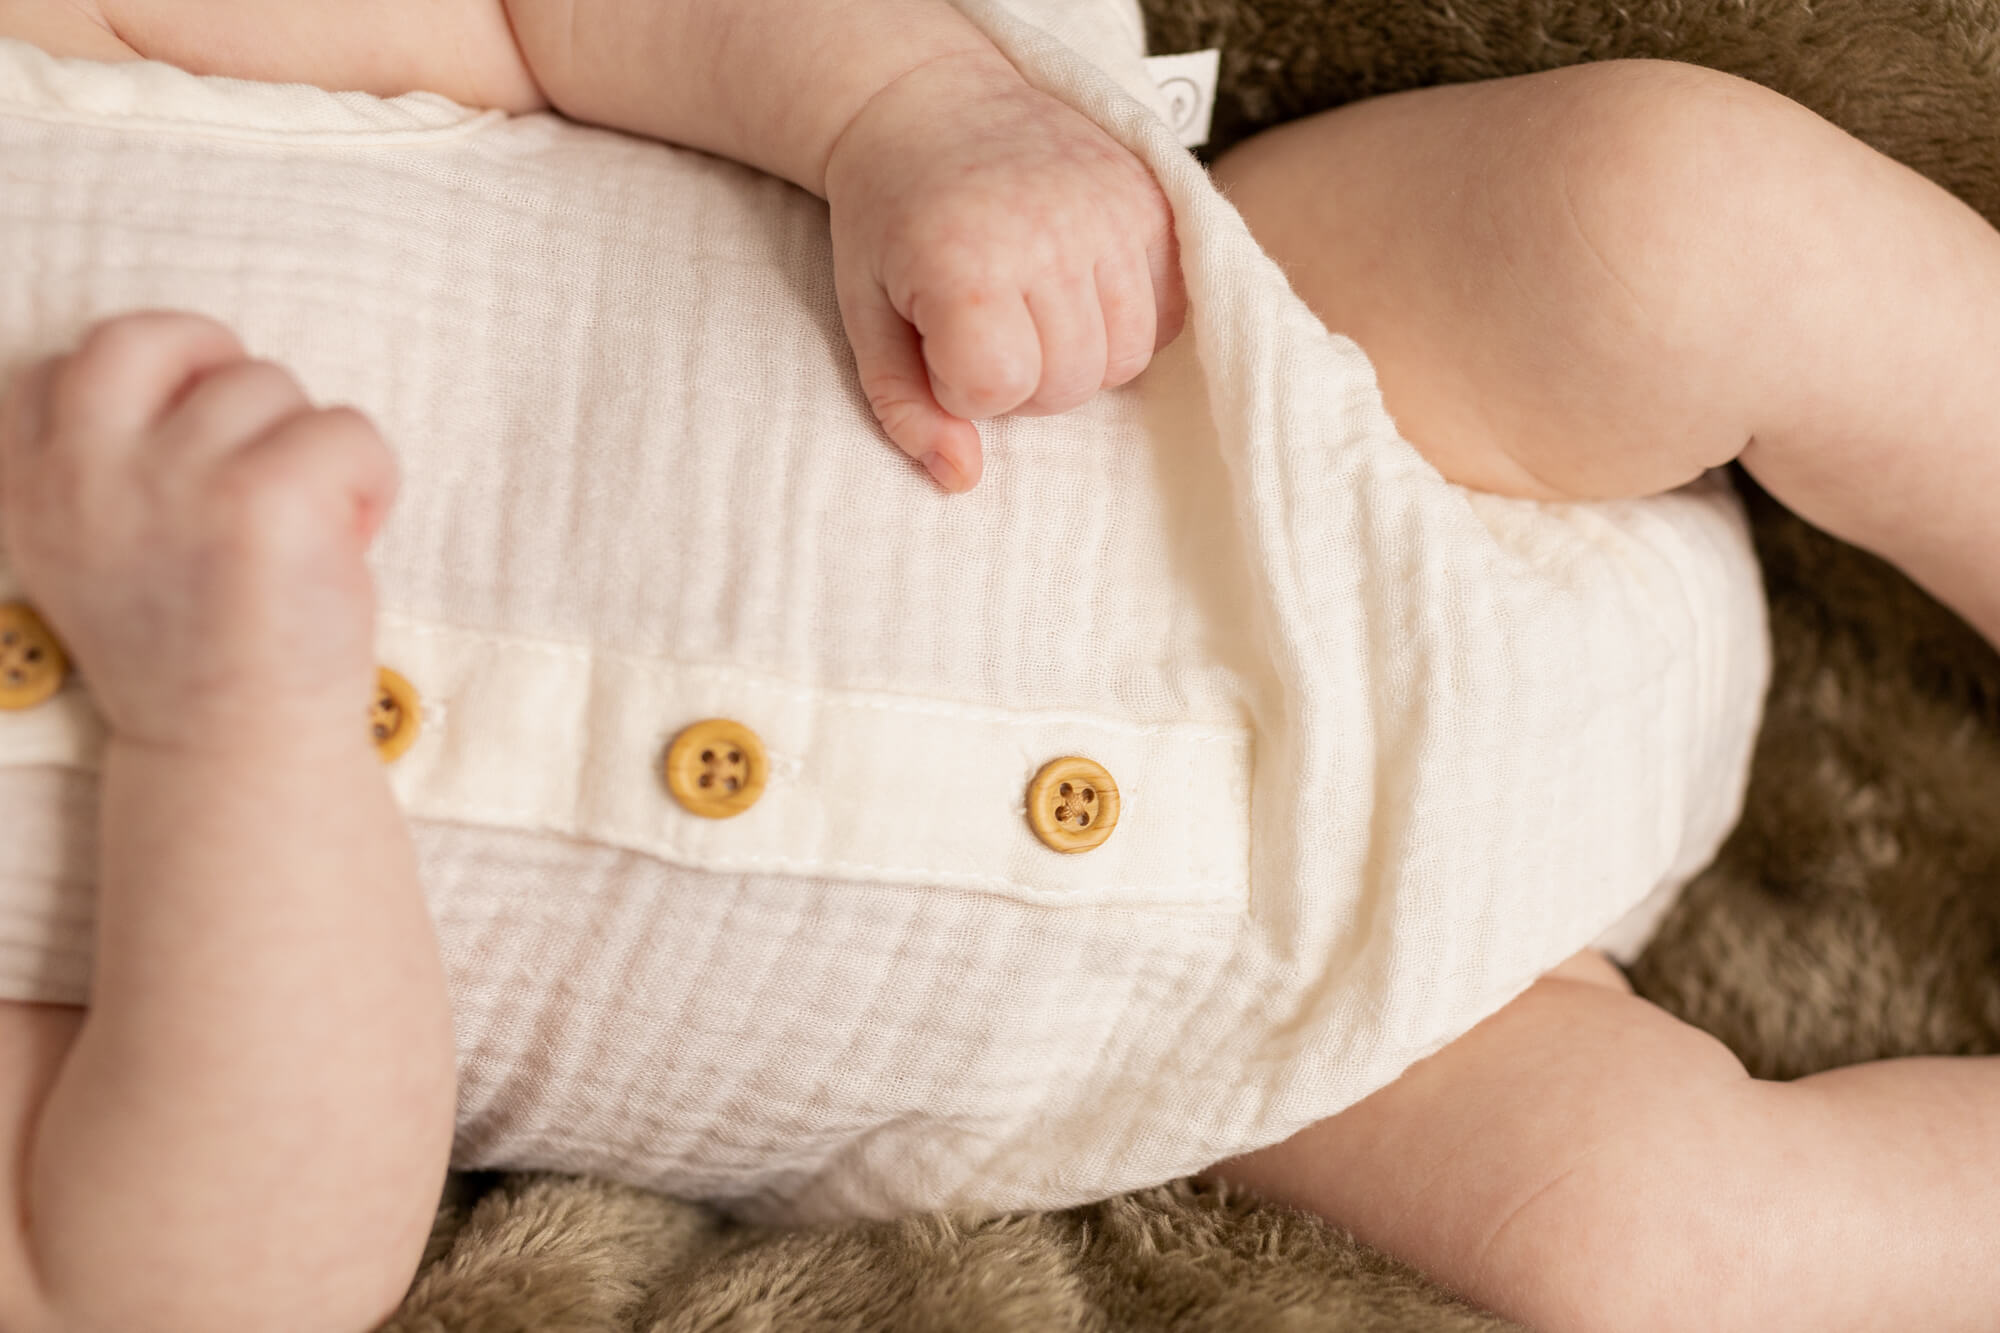 details of a newborn baby's onesie